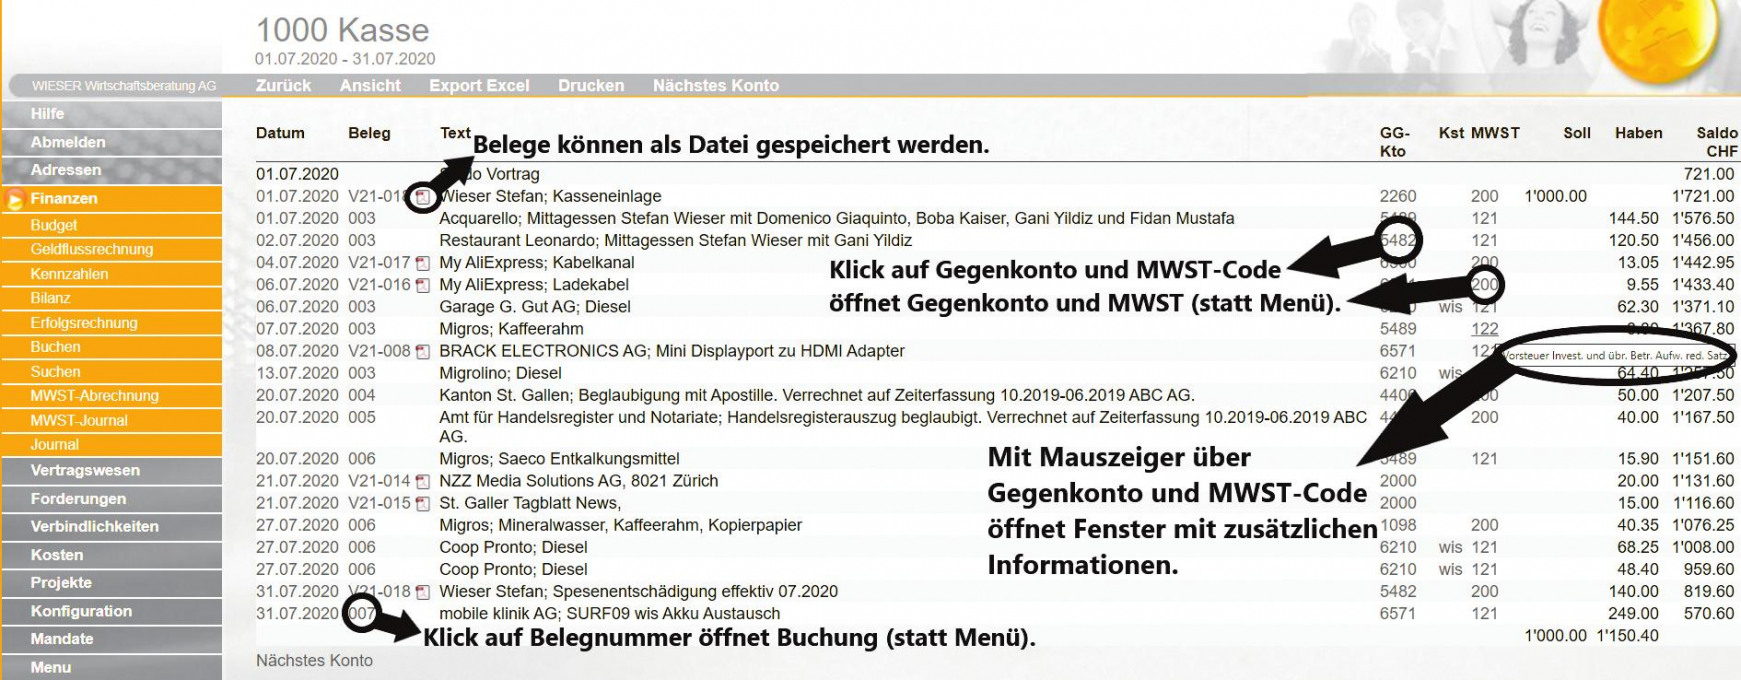 Wieser Treuhand Gruppe St. Gallen: Digitalisierung im KMU – so gelingt es!